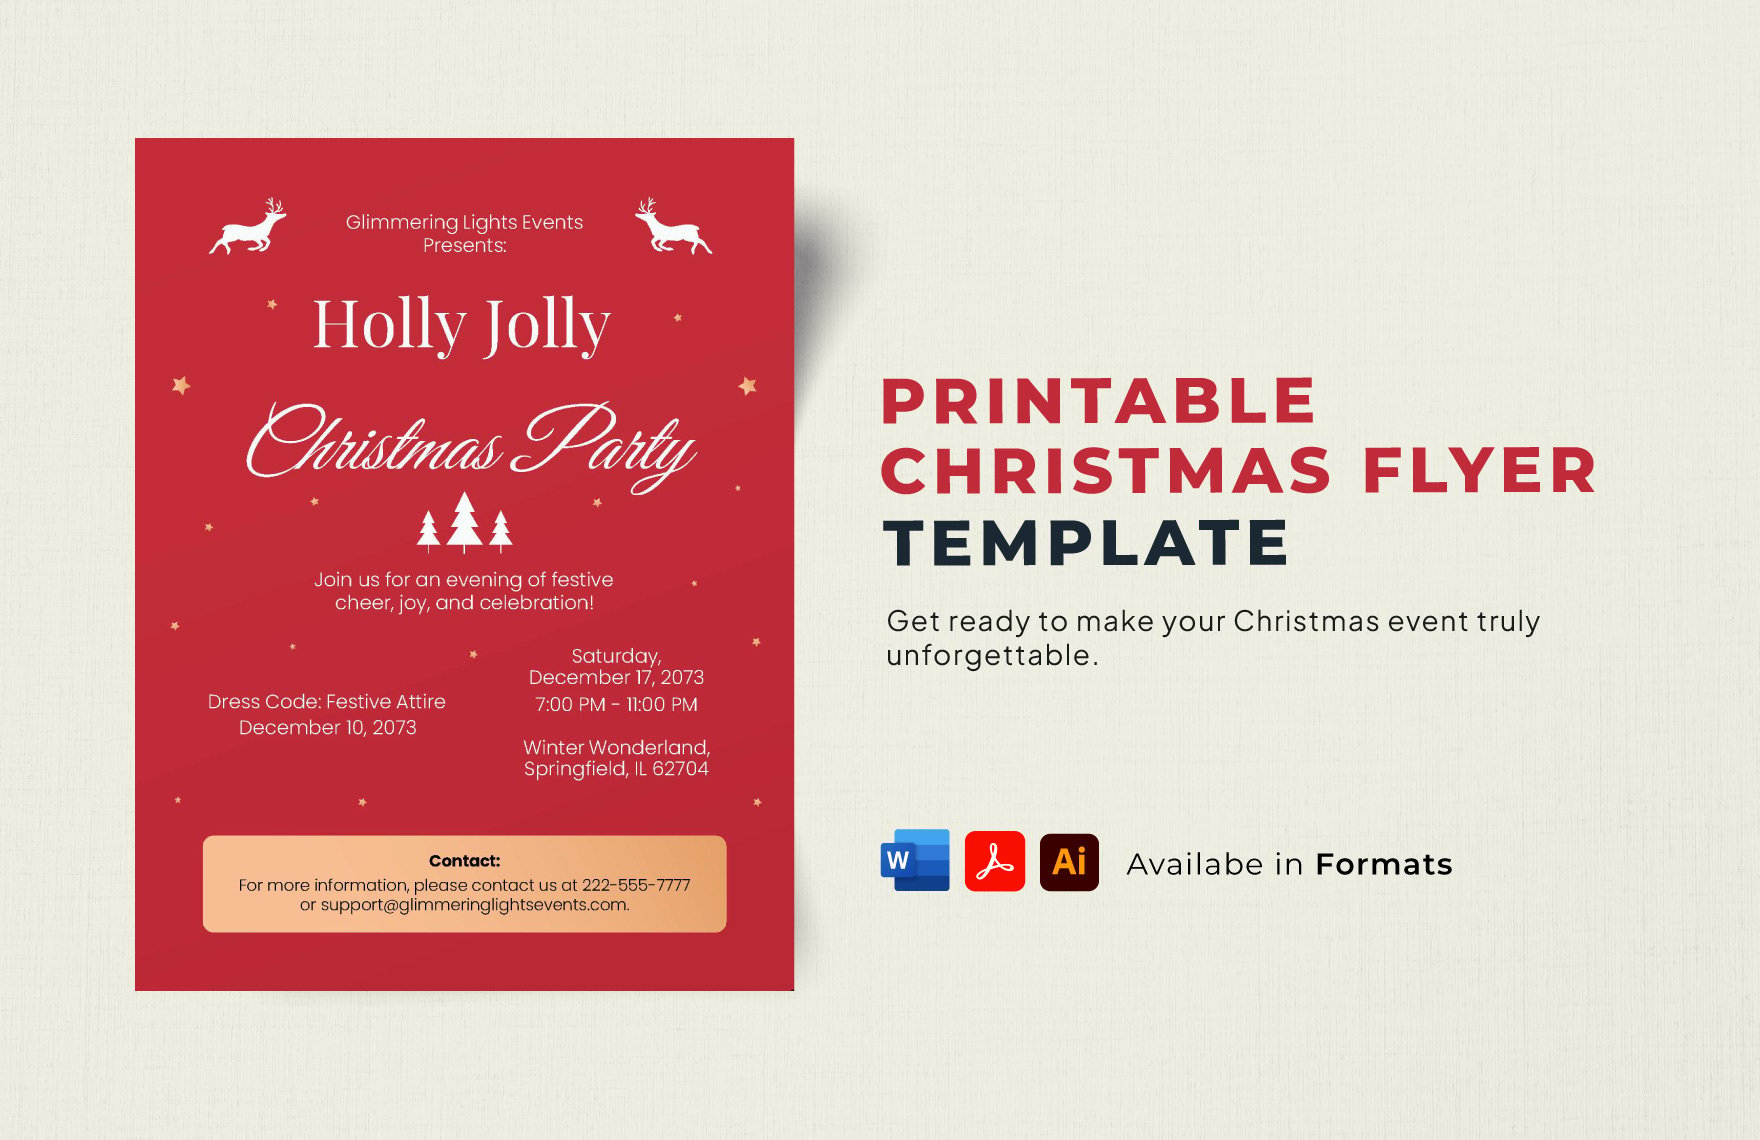 Printable Christmas Flyer Template